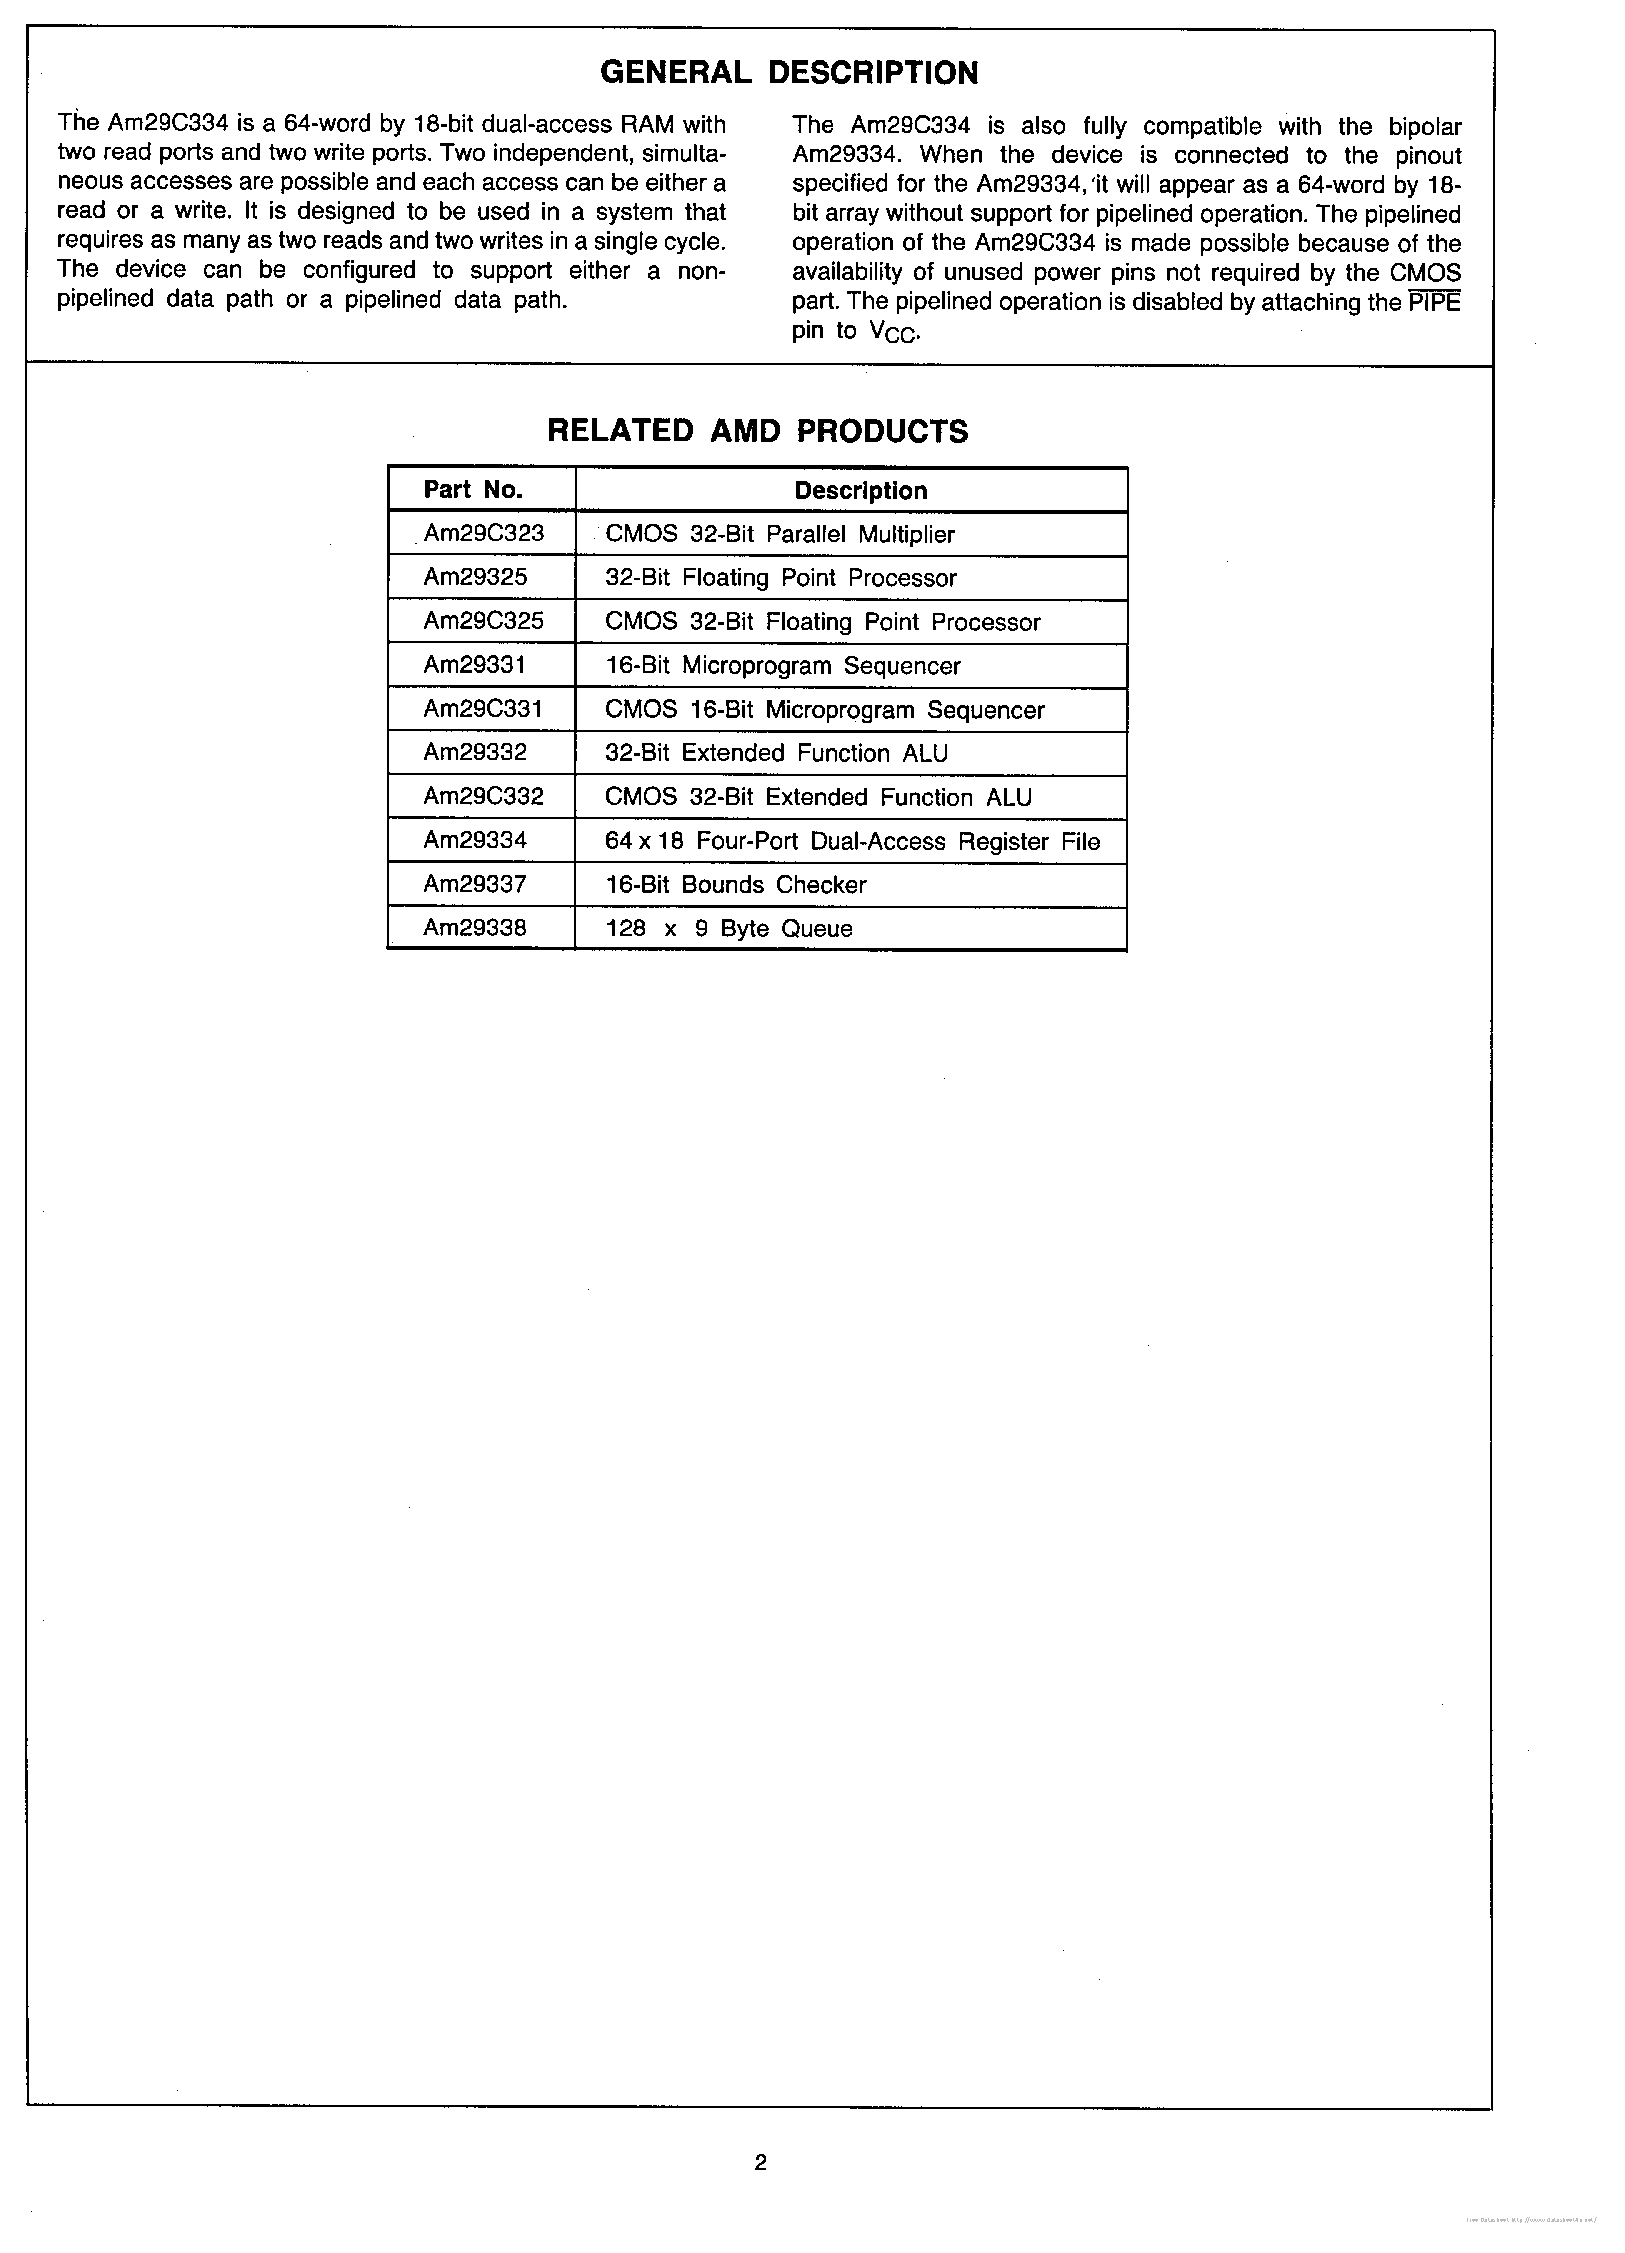 Datasheet AM29C334 - page 2